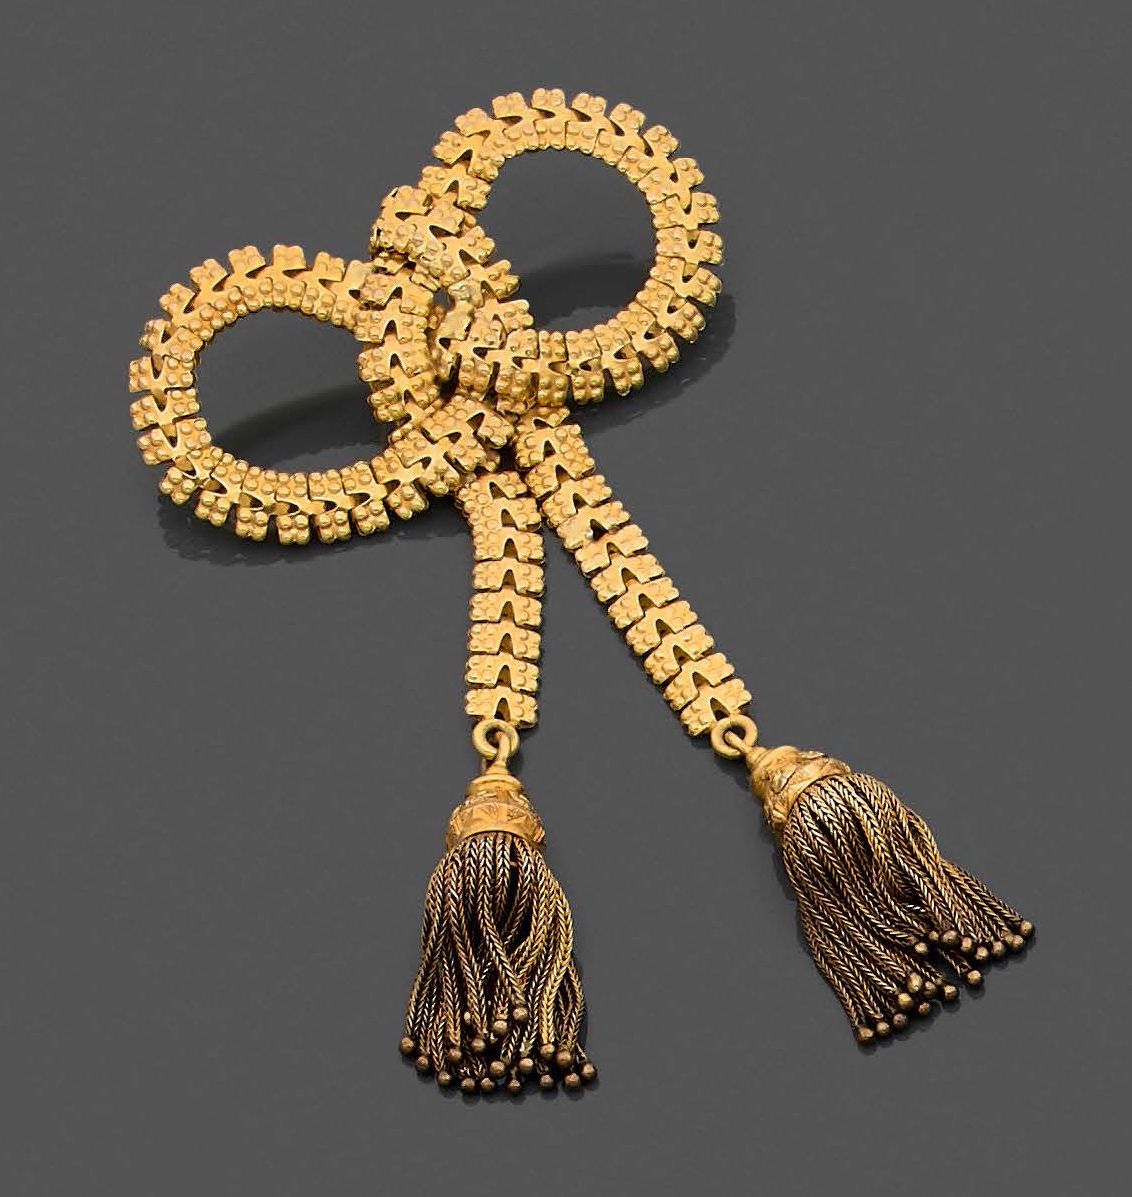 Null 黄金（750‰）镂空串珠 "蝴蝶结 "胸针，上面有两个流苏。修复痕迹。
法国作品。
尺寸：5 x 9 cm - 毛重：18.8 g